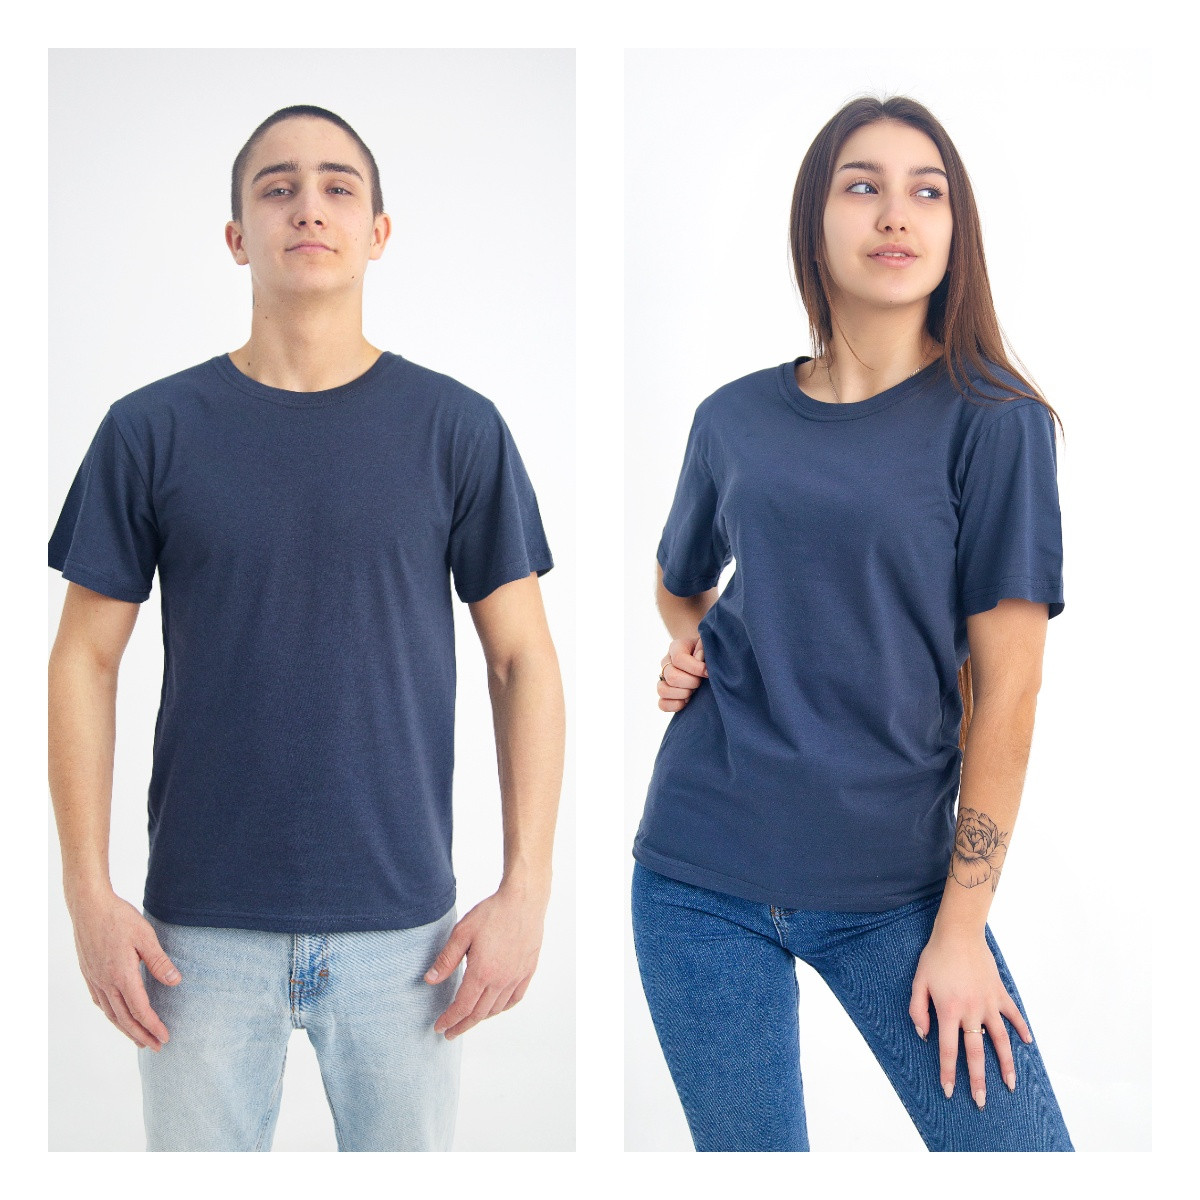 Чоловіча футболка антрацит сіра однотонна, бавовна 100% щільність 160, футболка доросла сіра